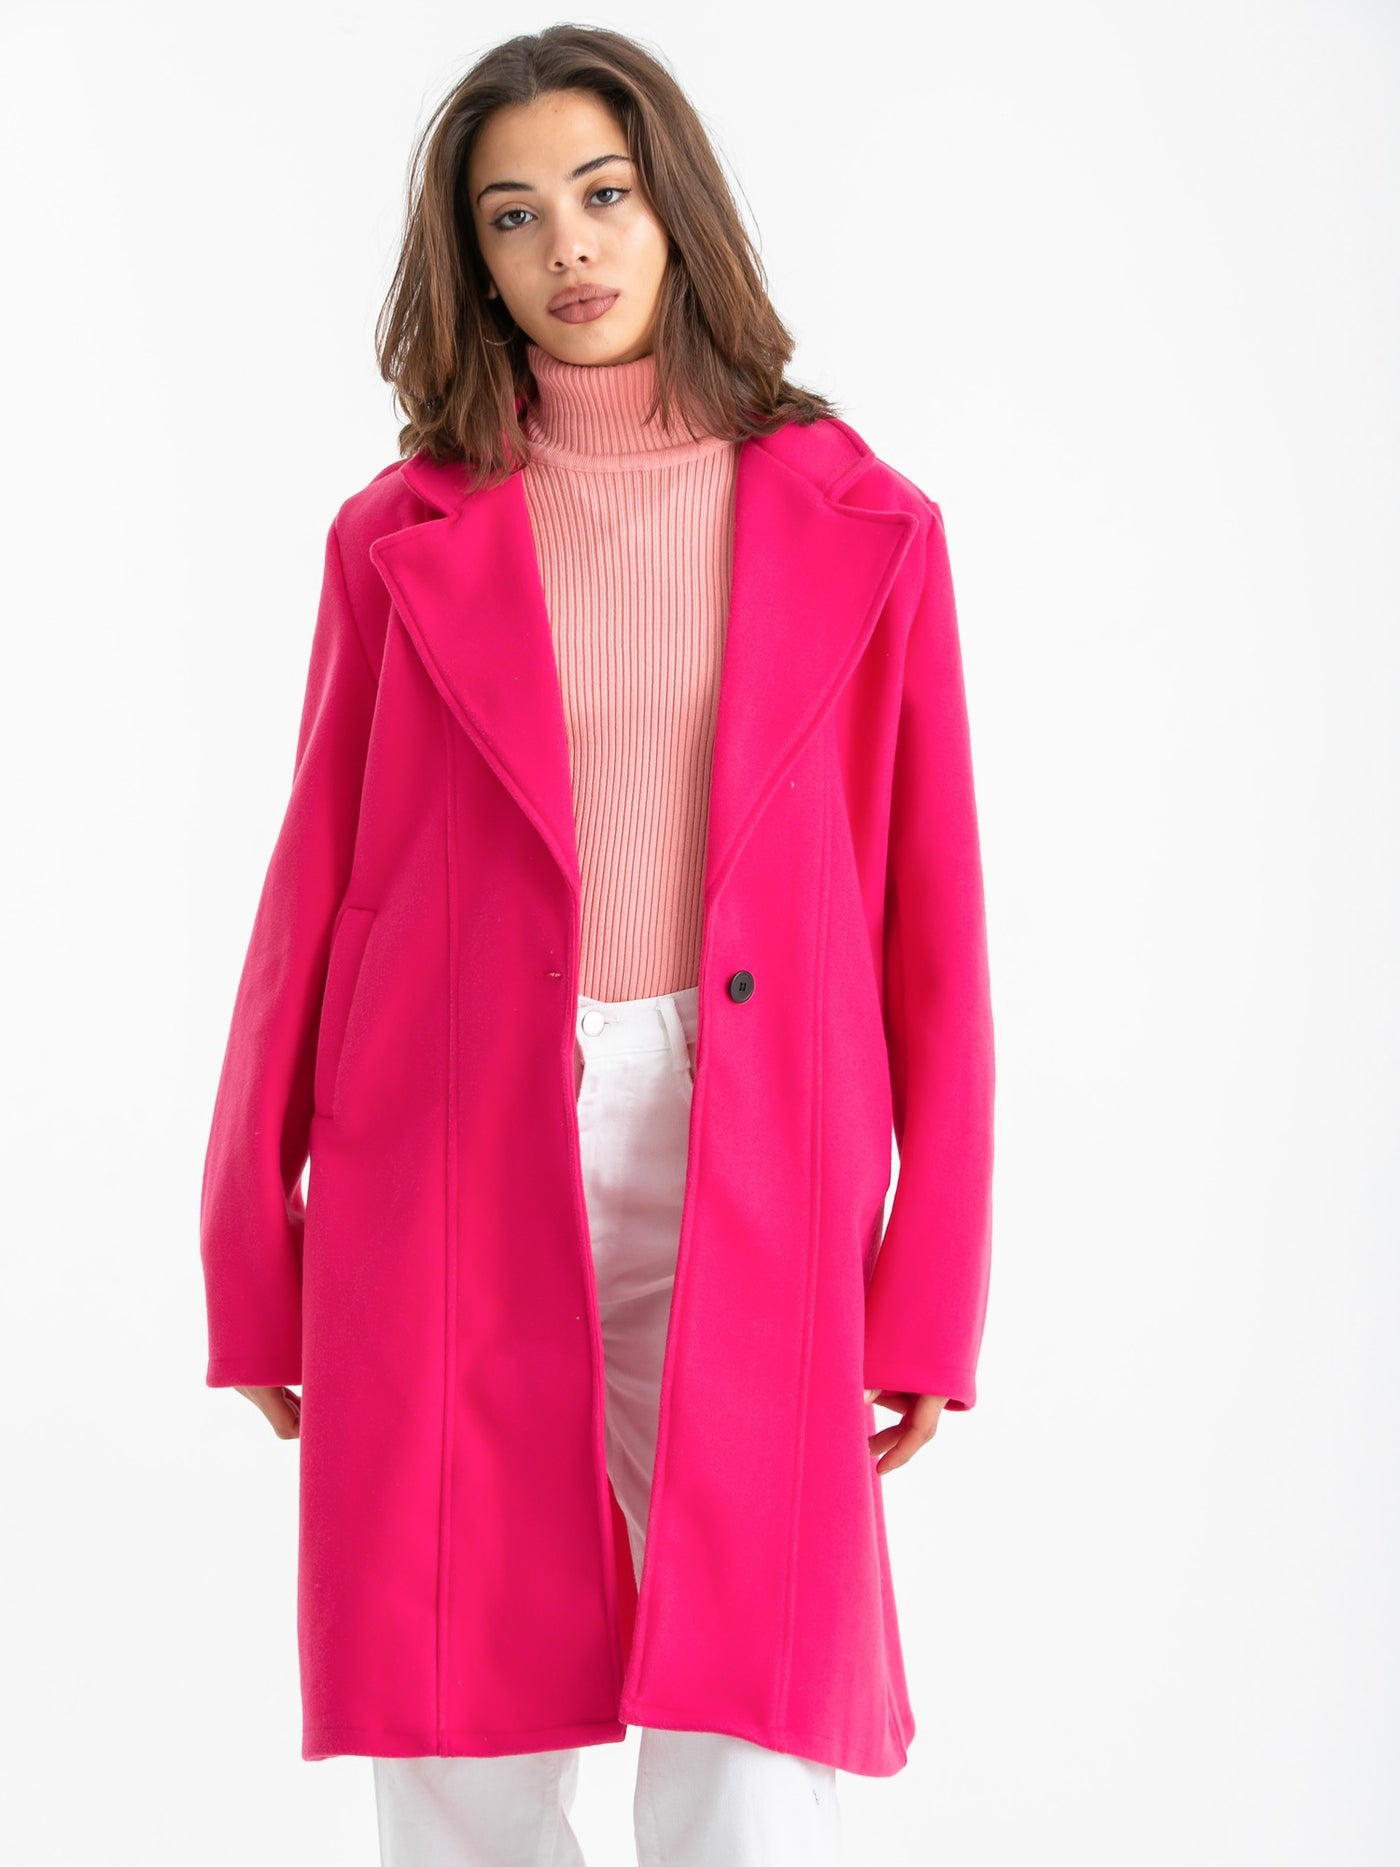 Coat - Oversized - Fashionable